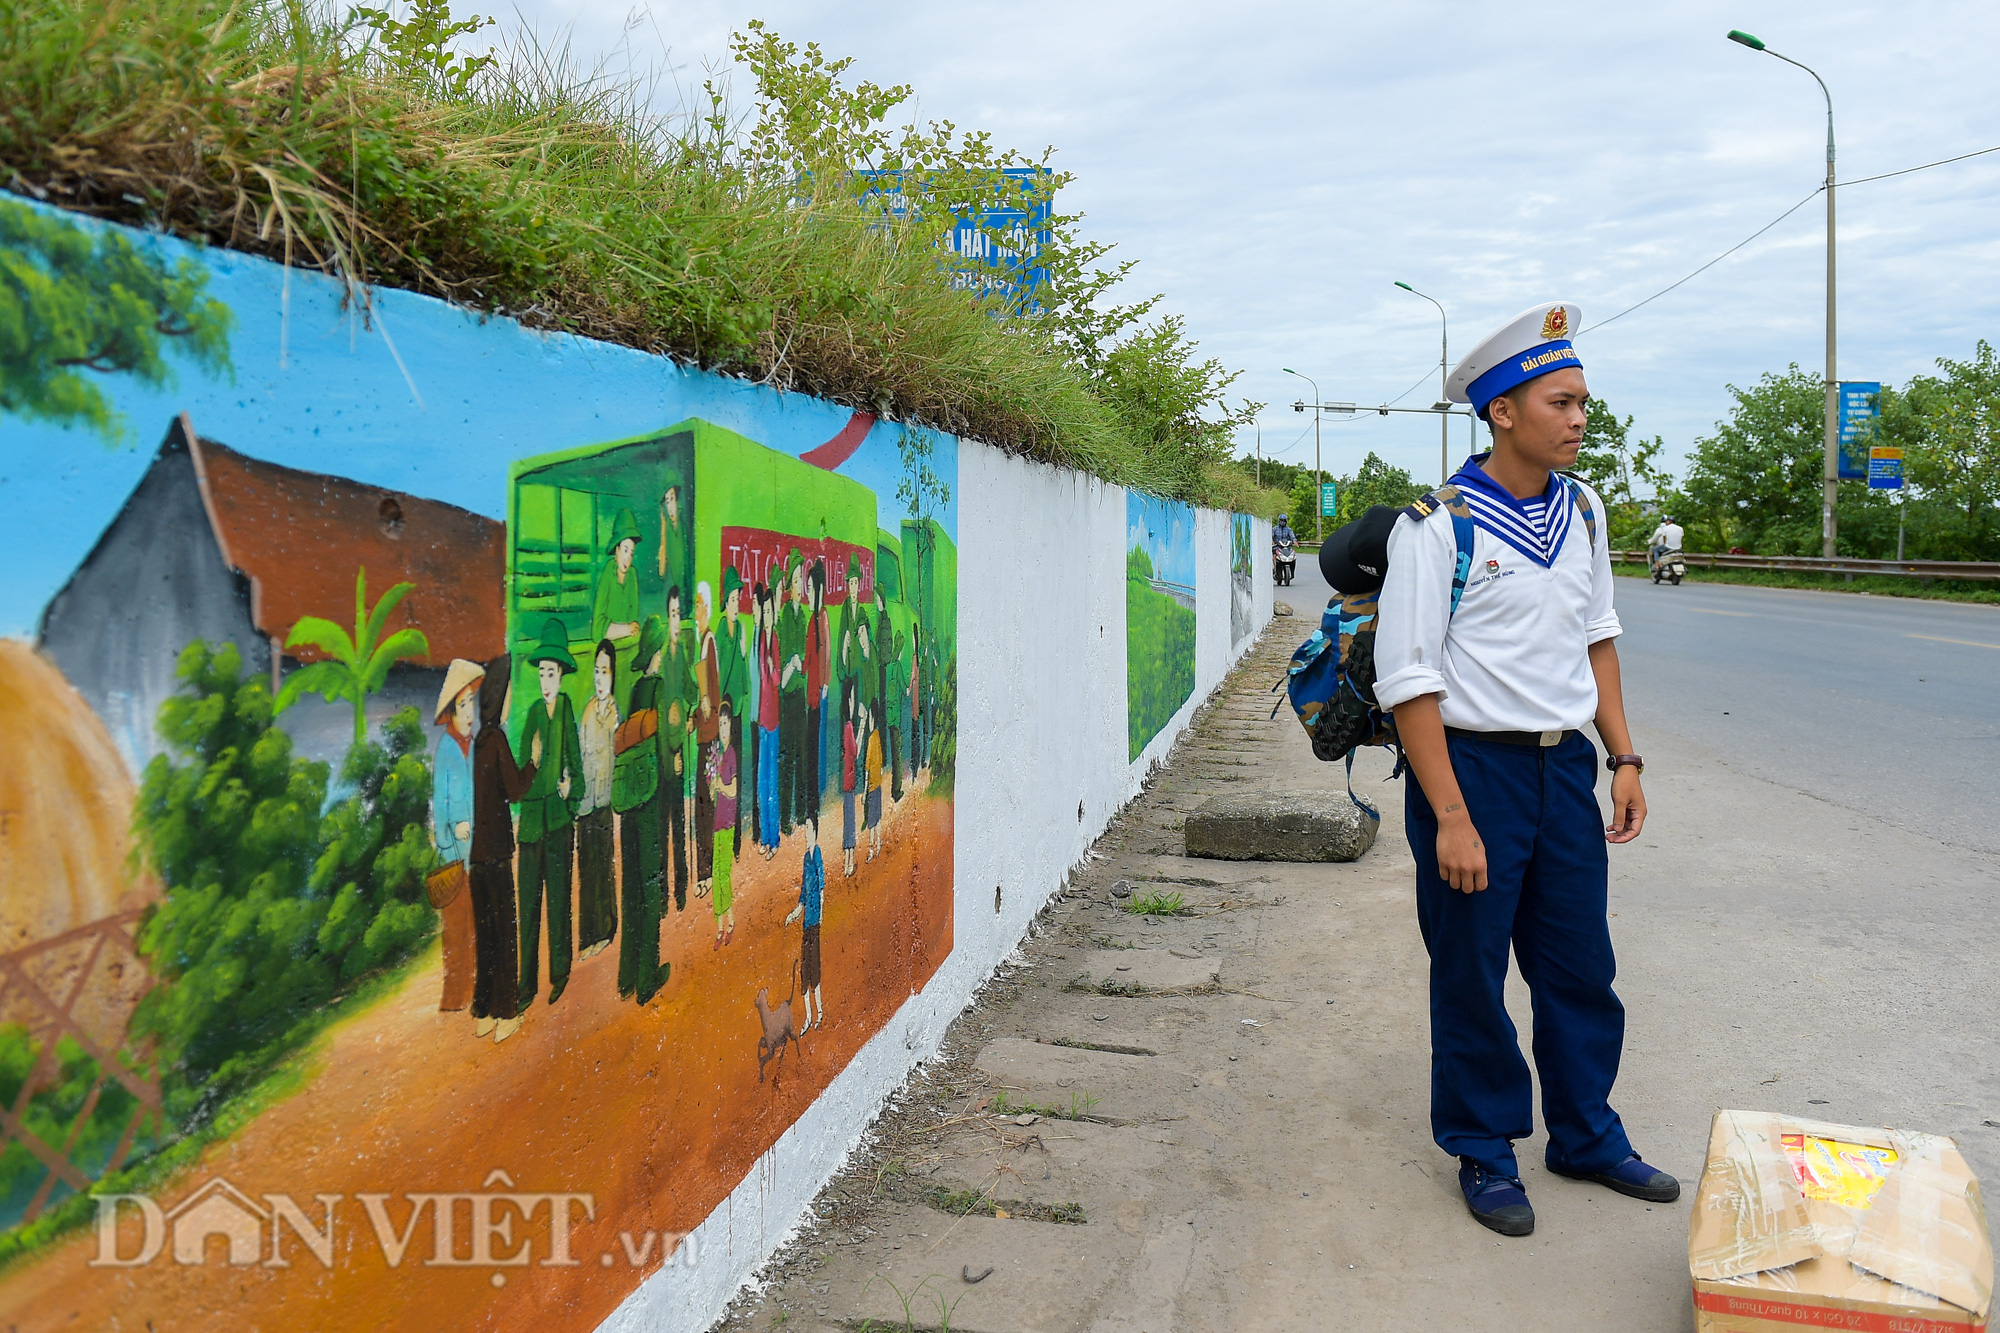 Ngỡ ngàng con đường bích họa dài hơn 2km mới xuất hiện ở Hà Nội - Ảnh 6.